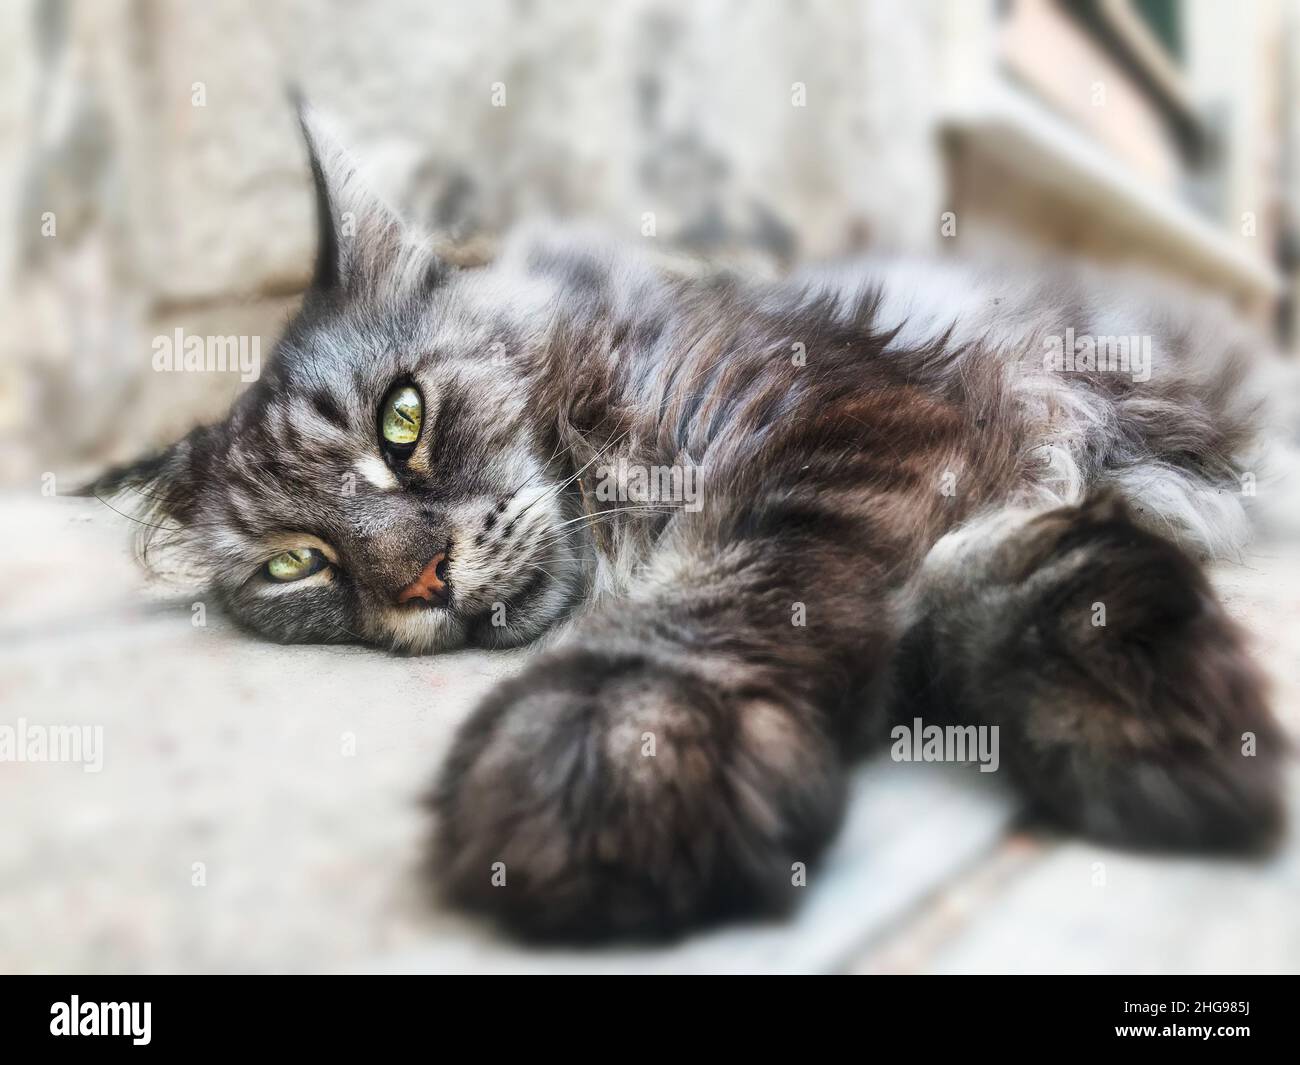 Gros plan d'un chat tabby moelleux couché sur la chaussée Banque D'Images